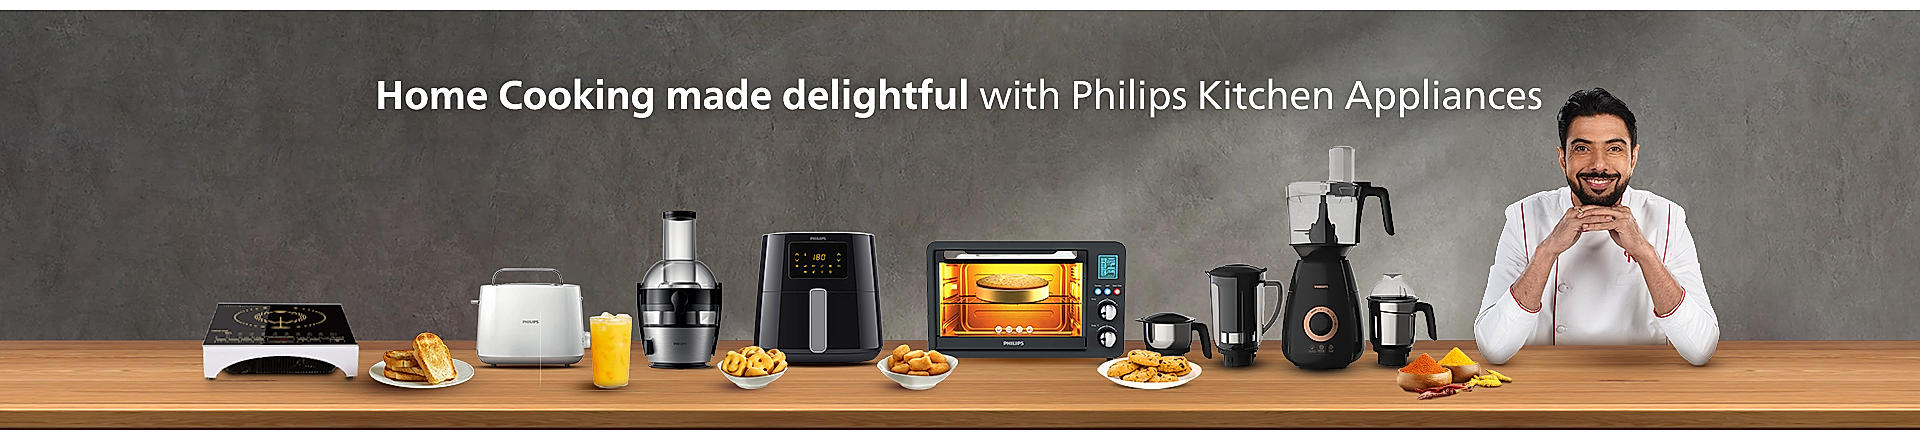 Philips Kitchen Appliances 